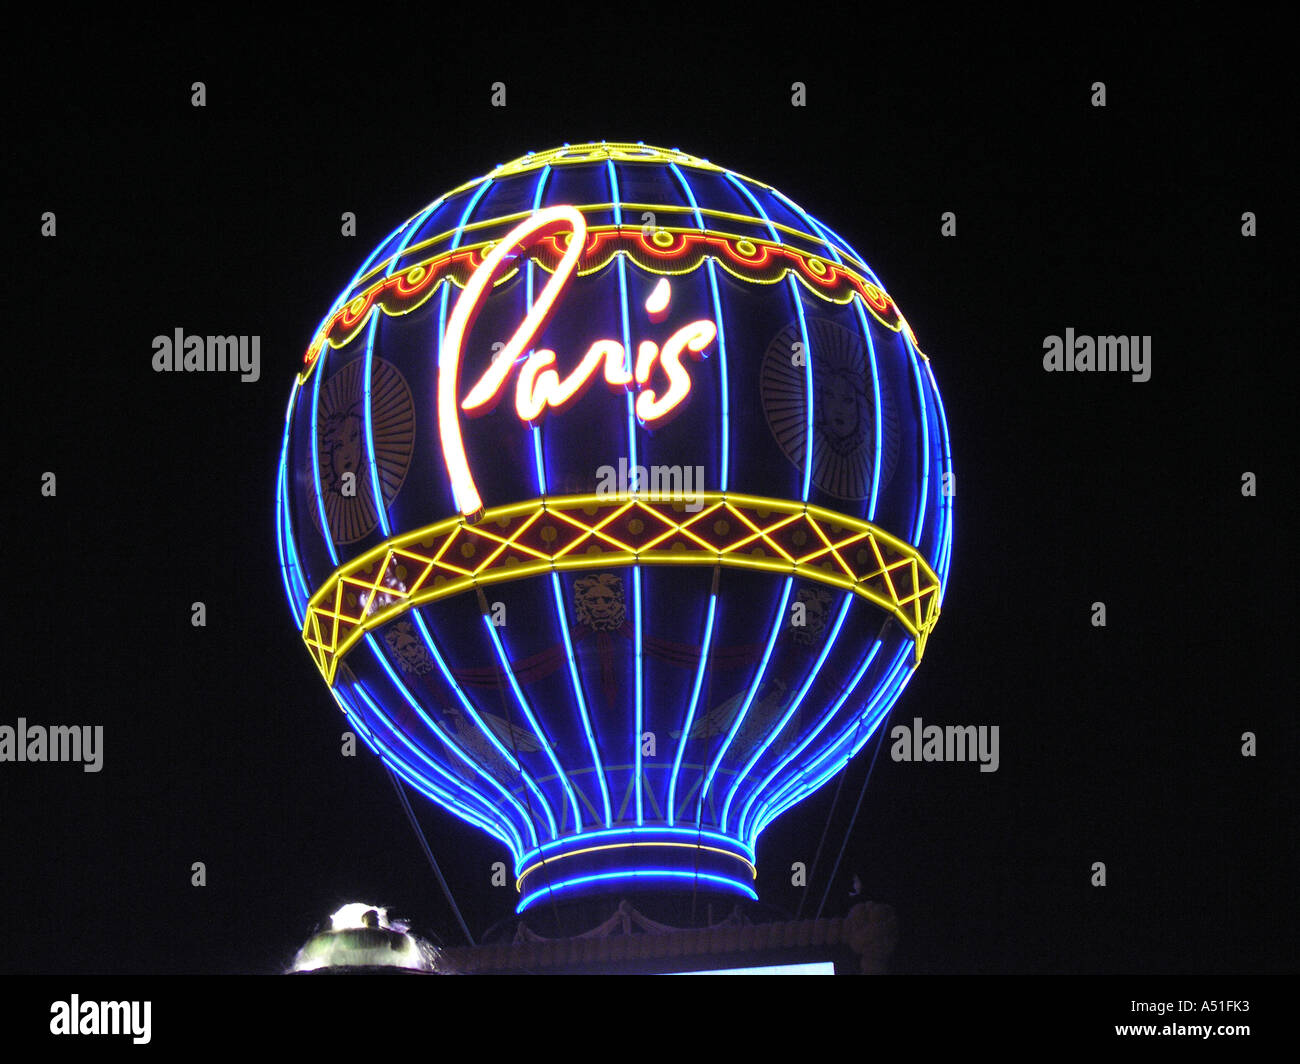 Paris Hotel und Casino in Las Vegas Streifen Skyline bei Nacht leuchtenden Neonröhren Wahrzeichen Gebäudearchitektur Stockfoto